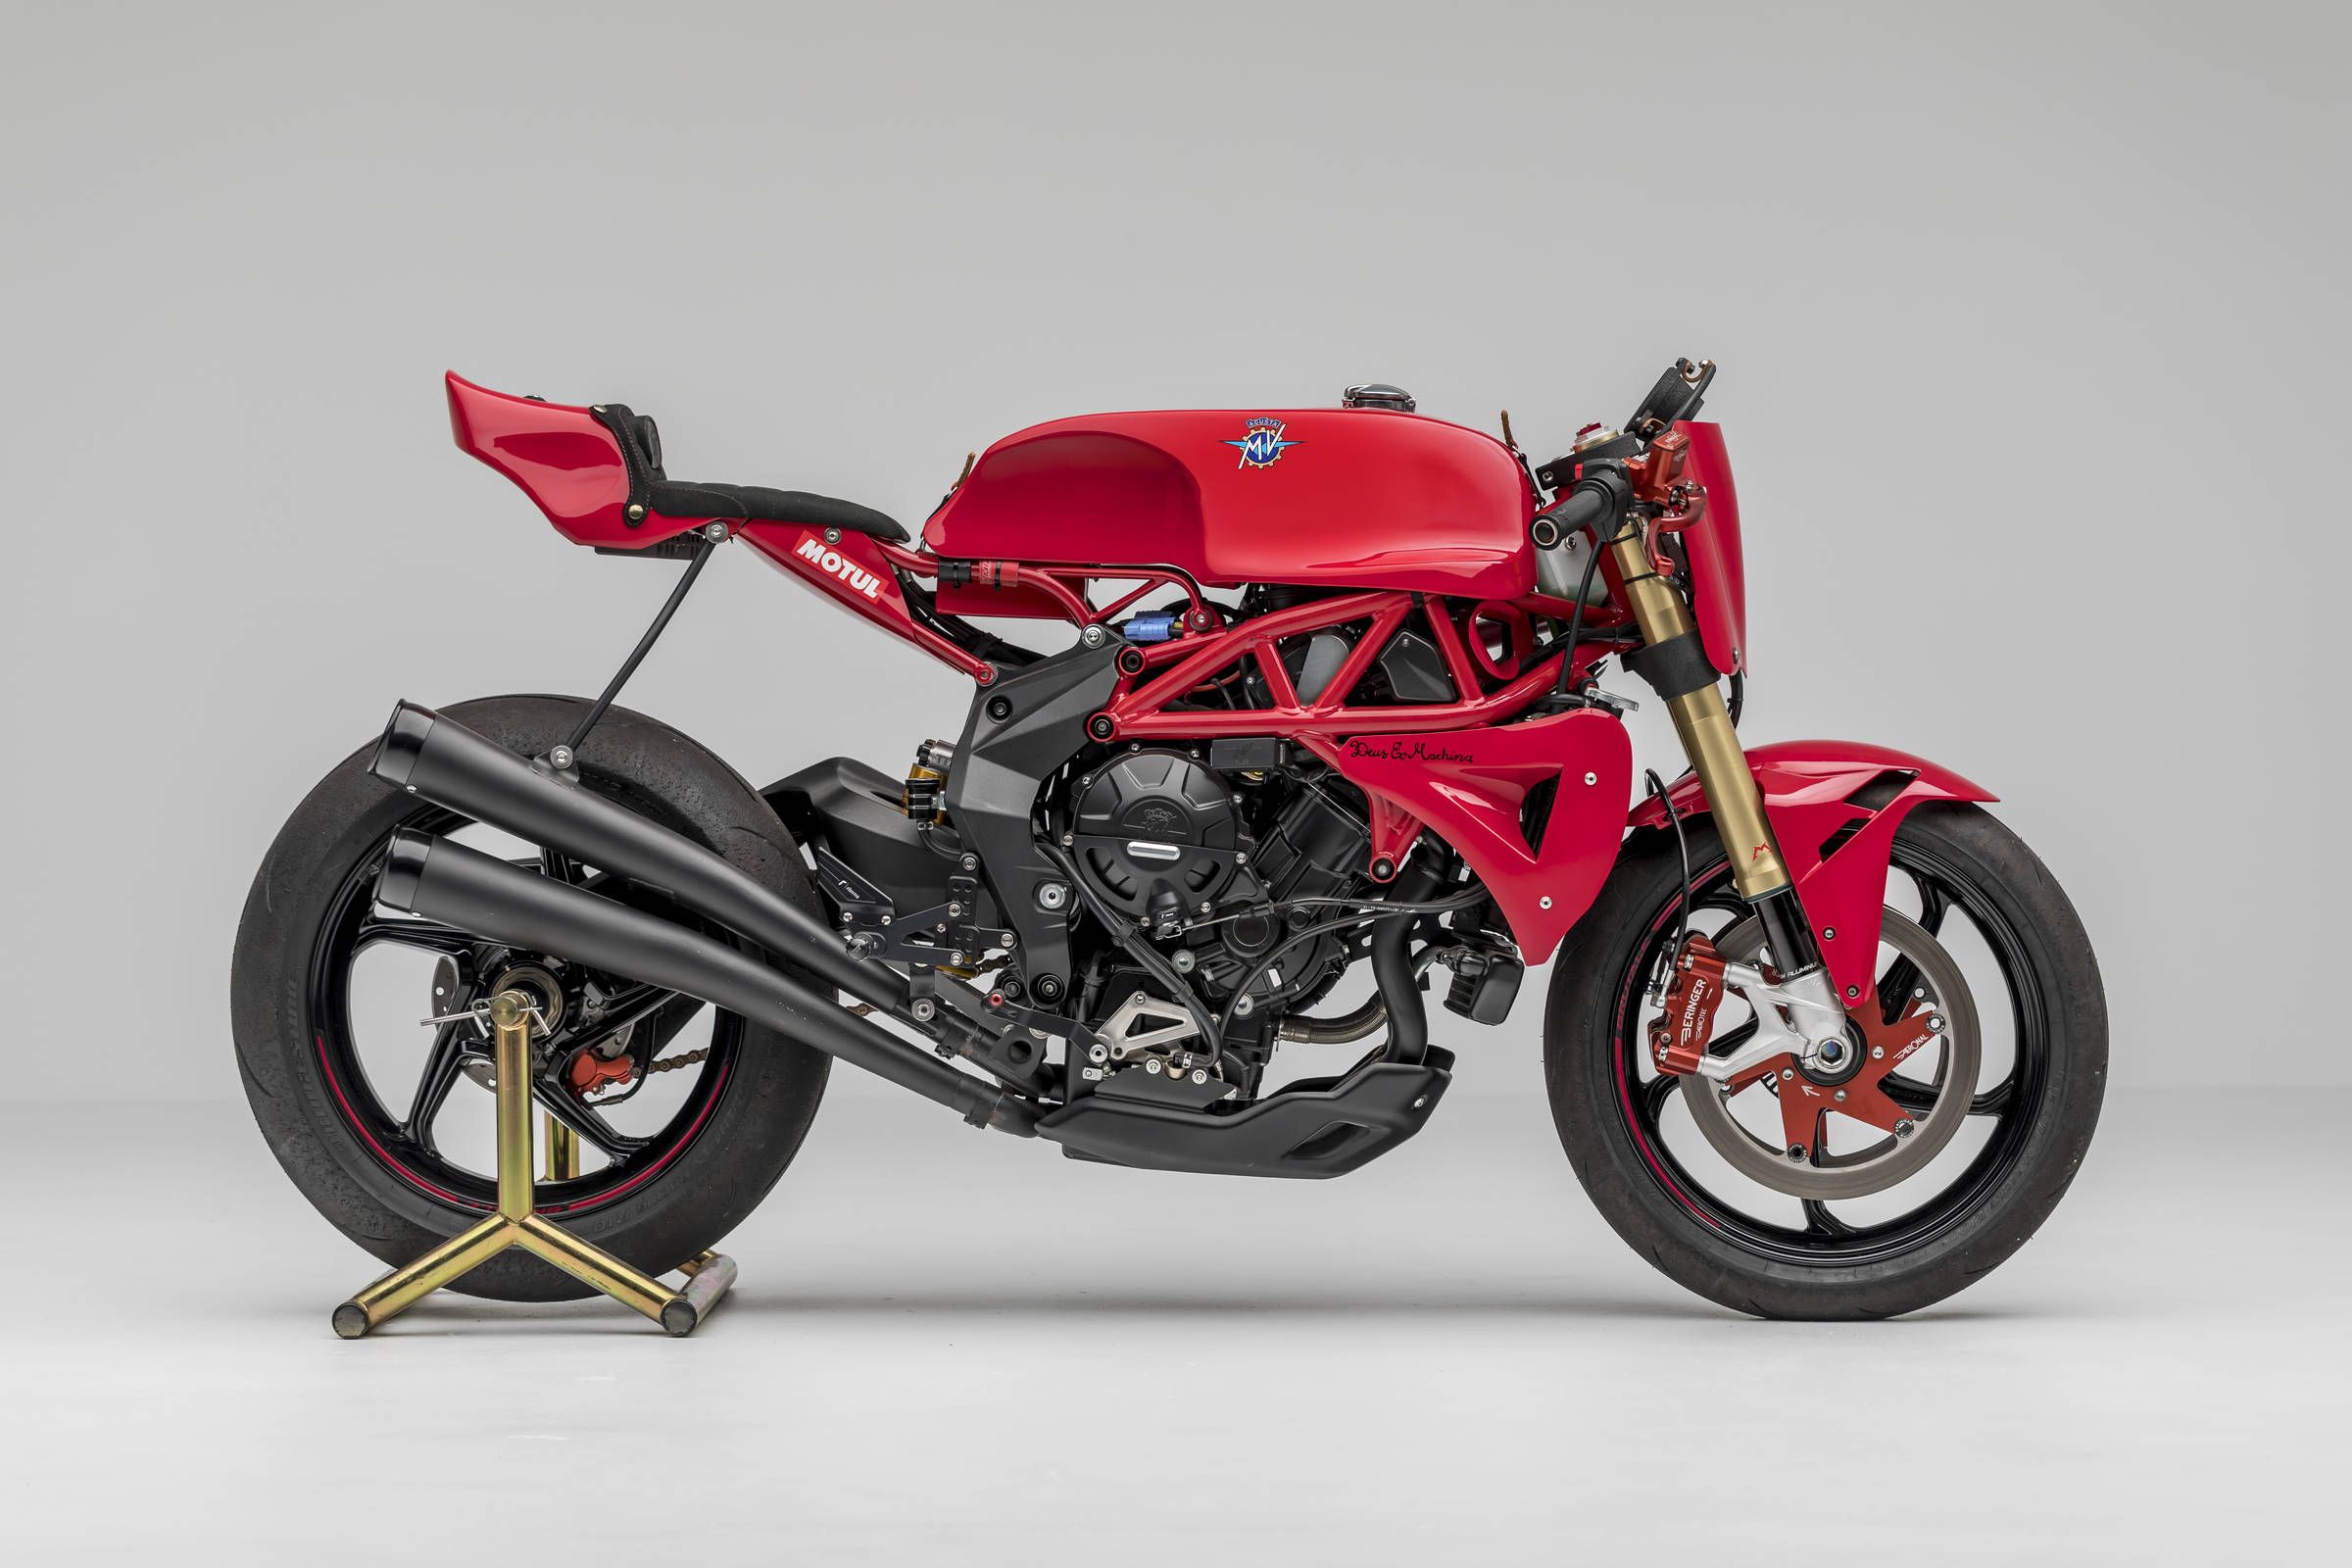 29+ Astonishing Motorcycle customization ideas image ideas